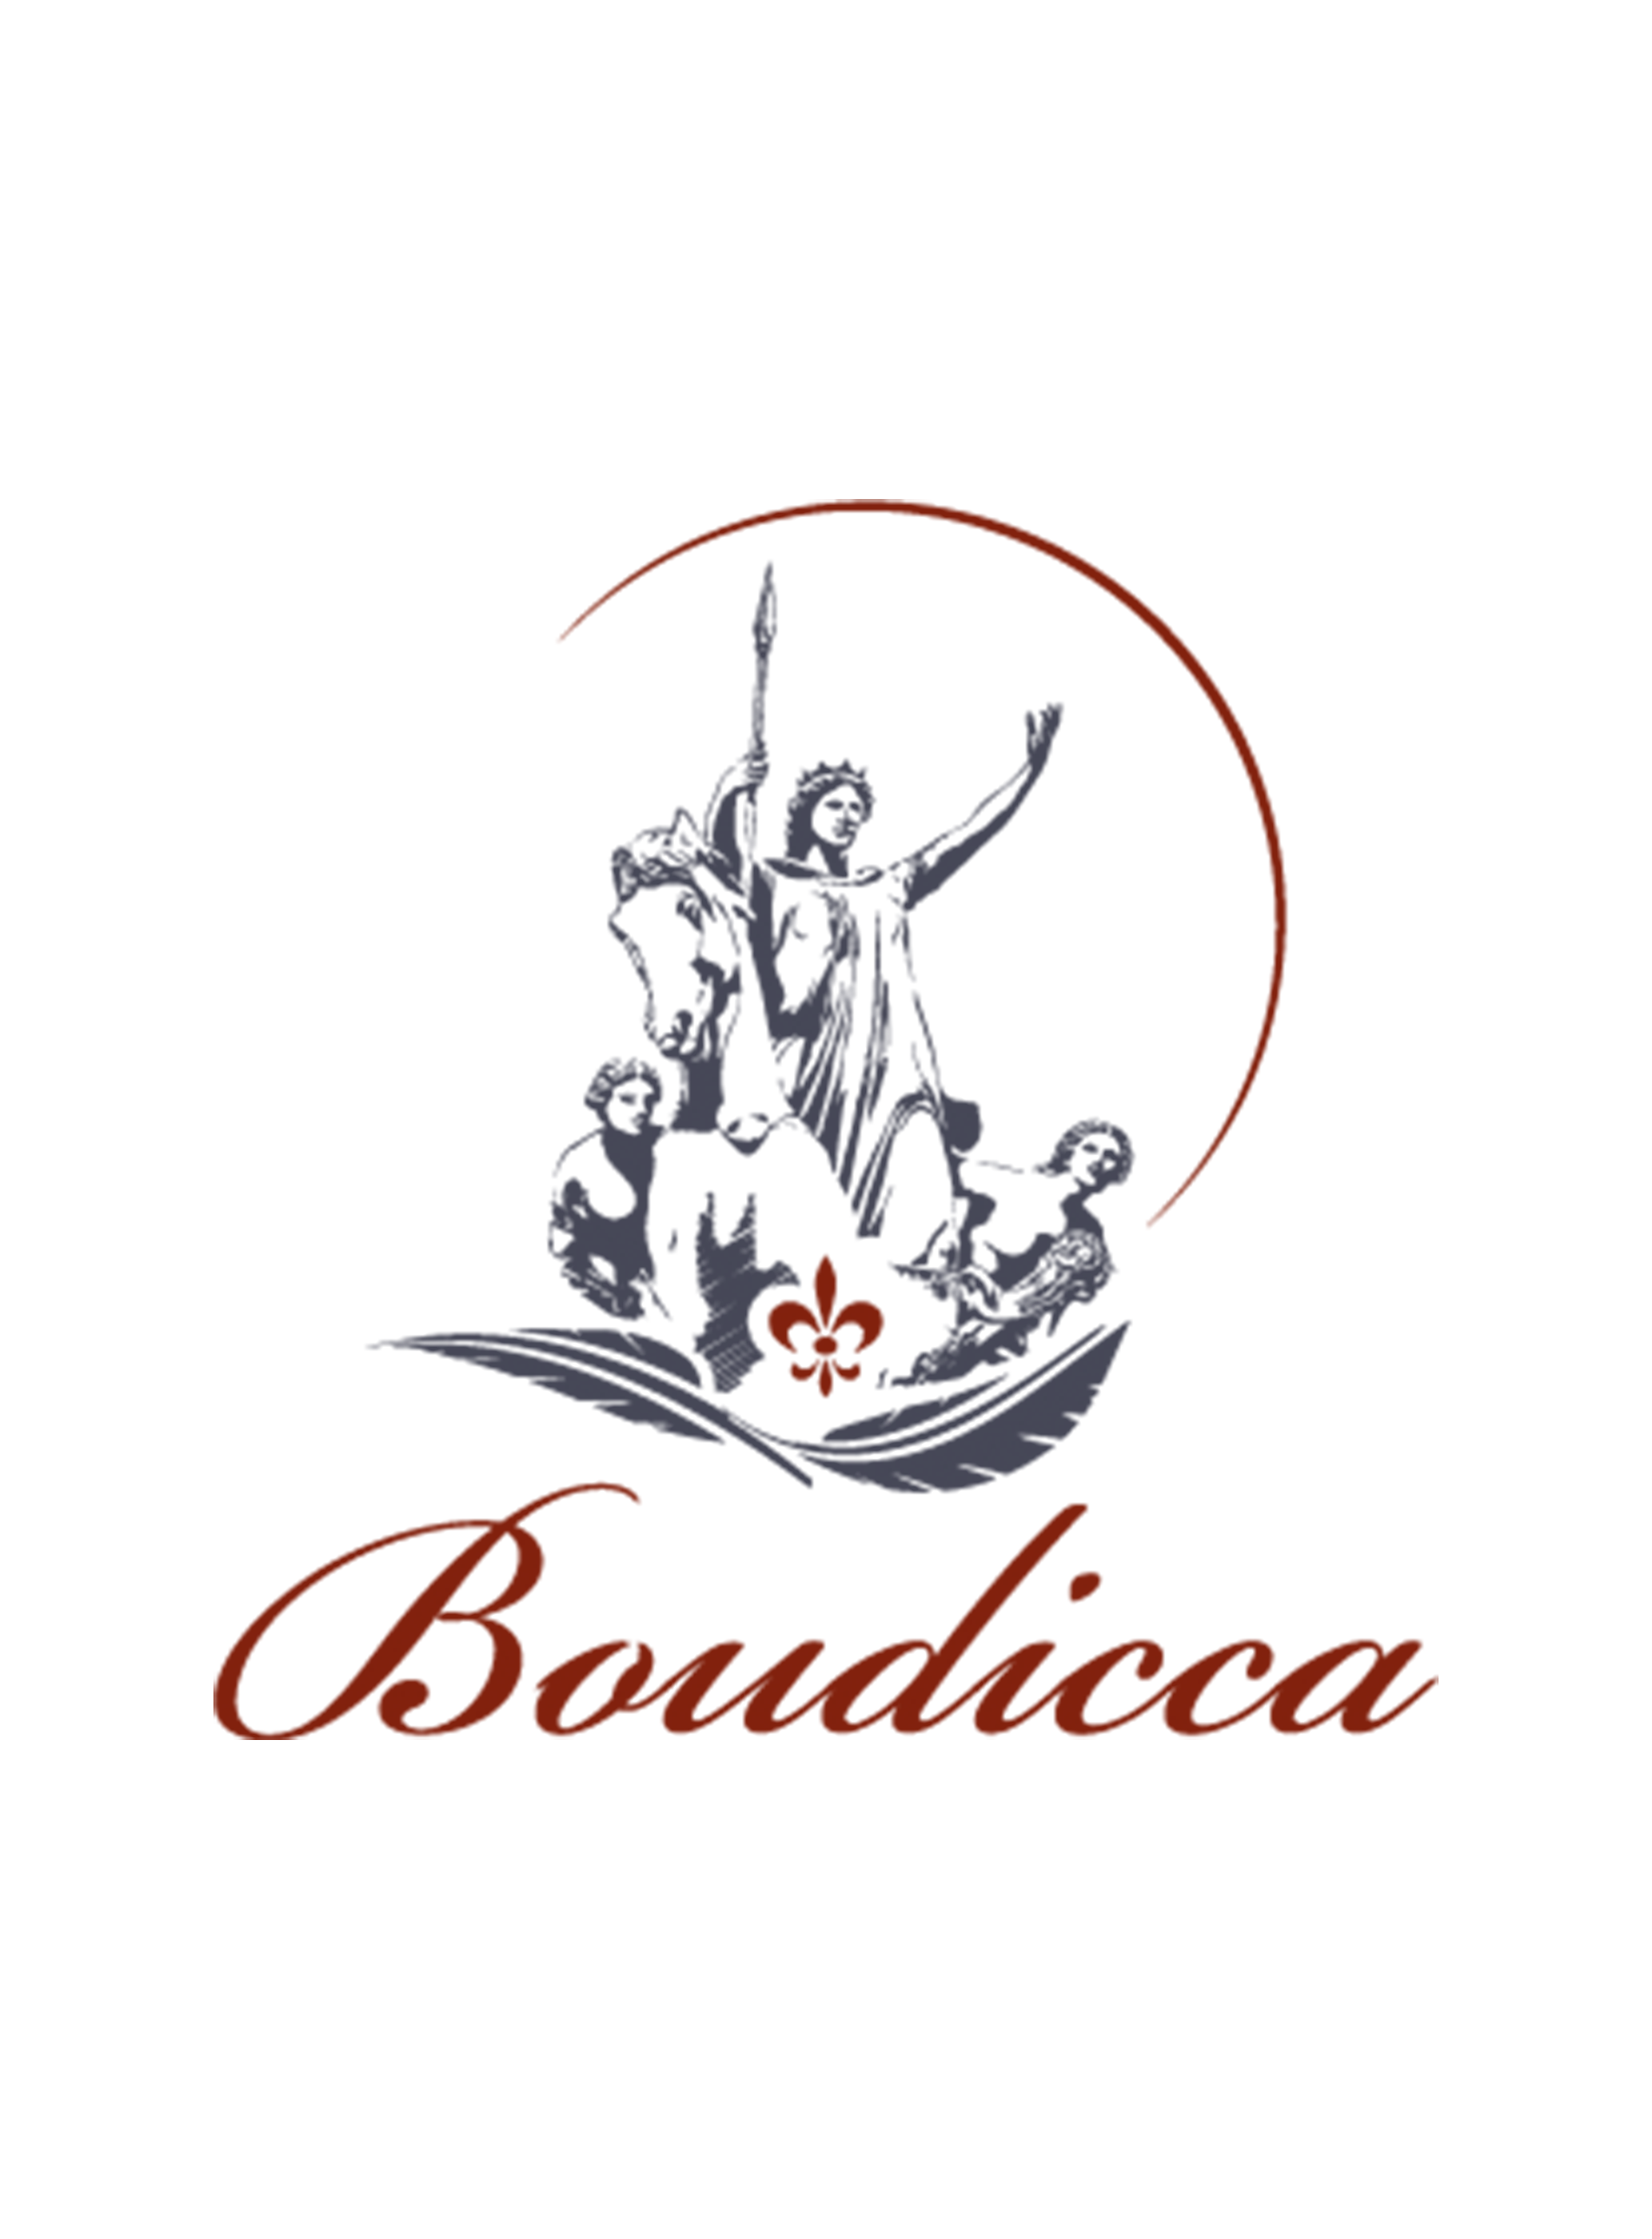 Logo pour Boudicca, une communauté de personnes engagées à vivre plus consciemment.